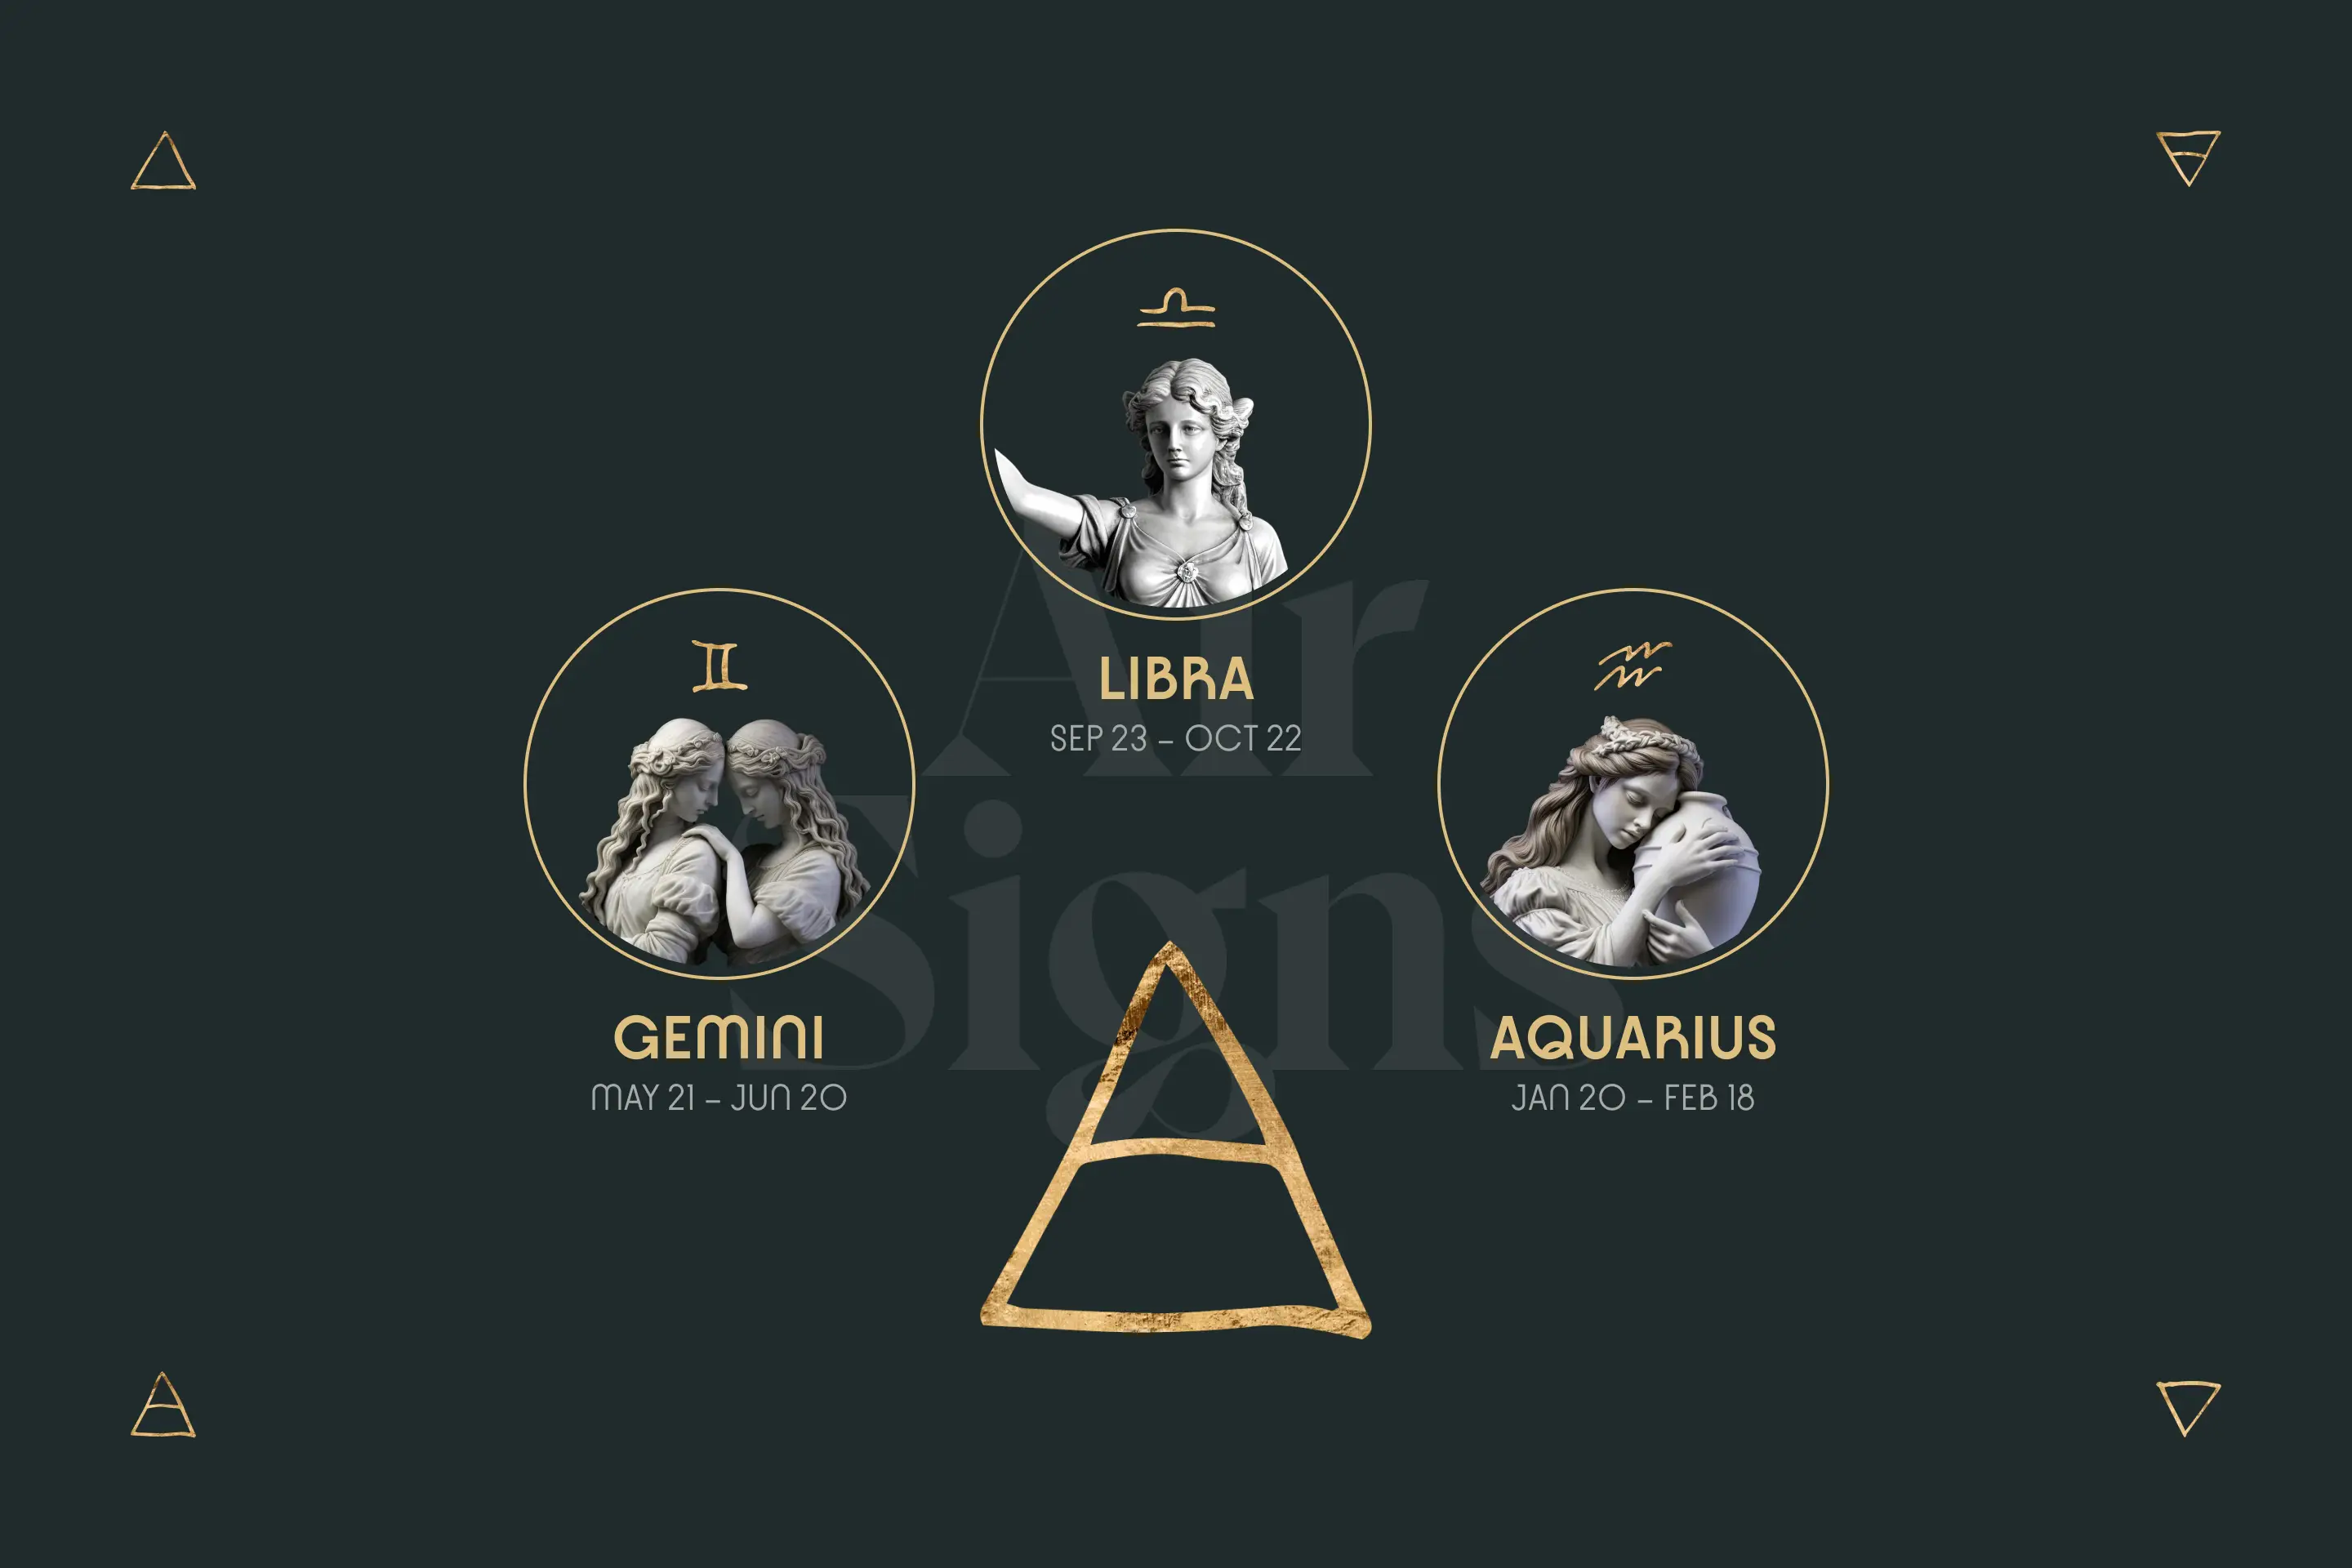 Air Signs: Gemini, Libra and Aquarius